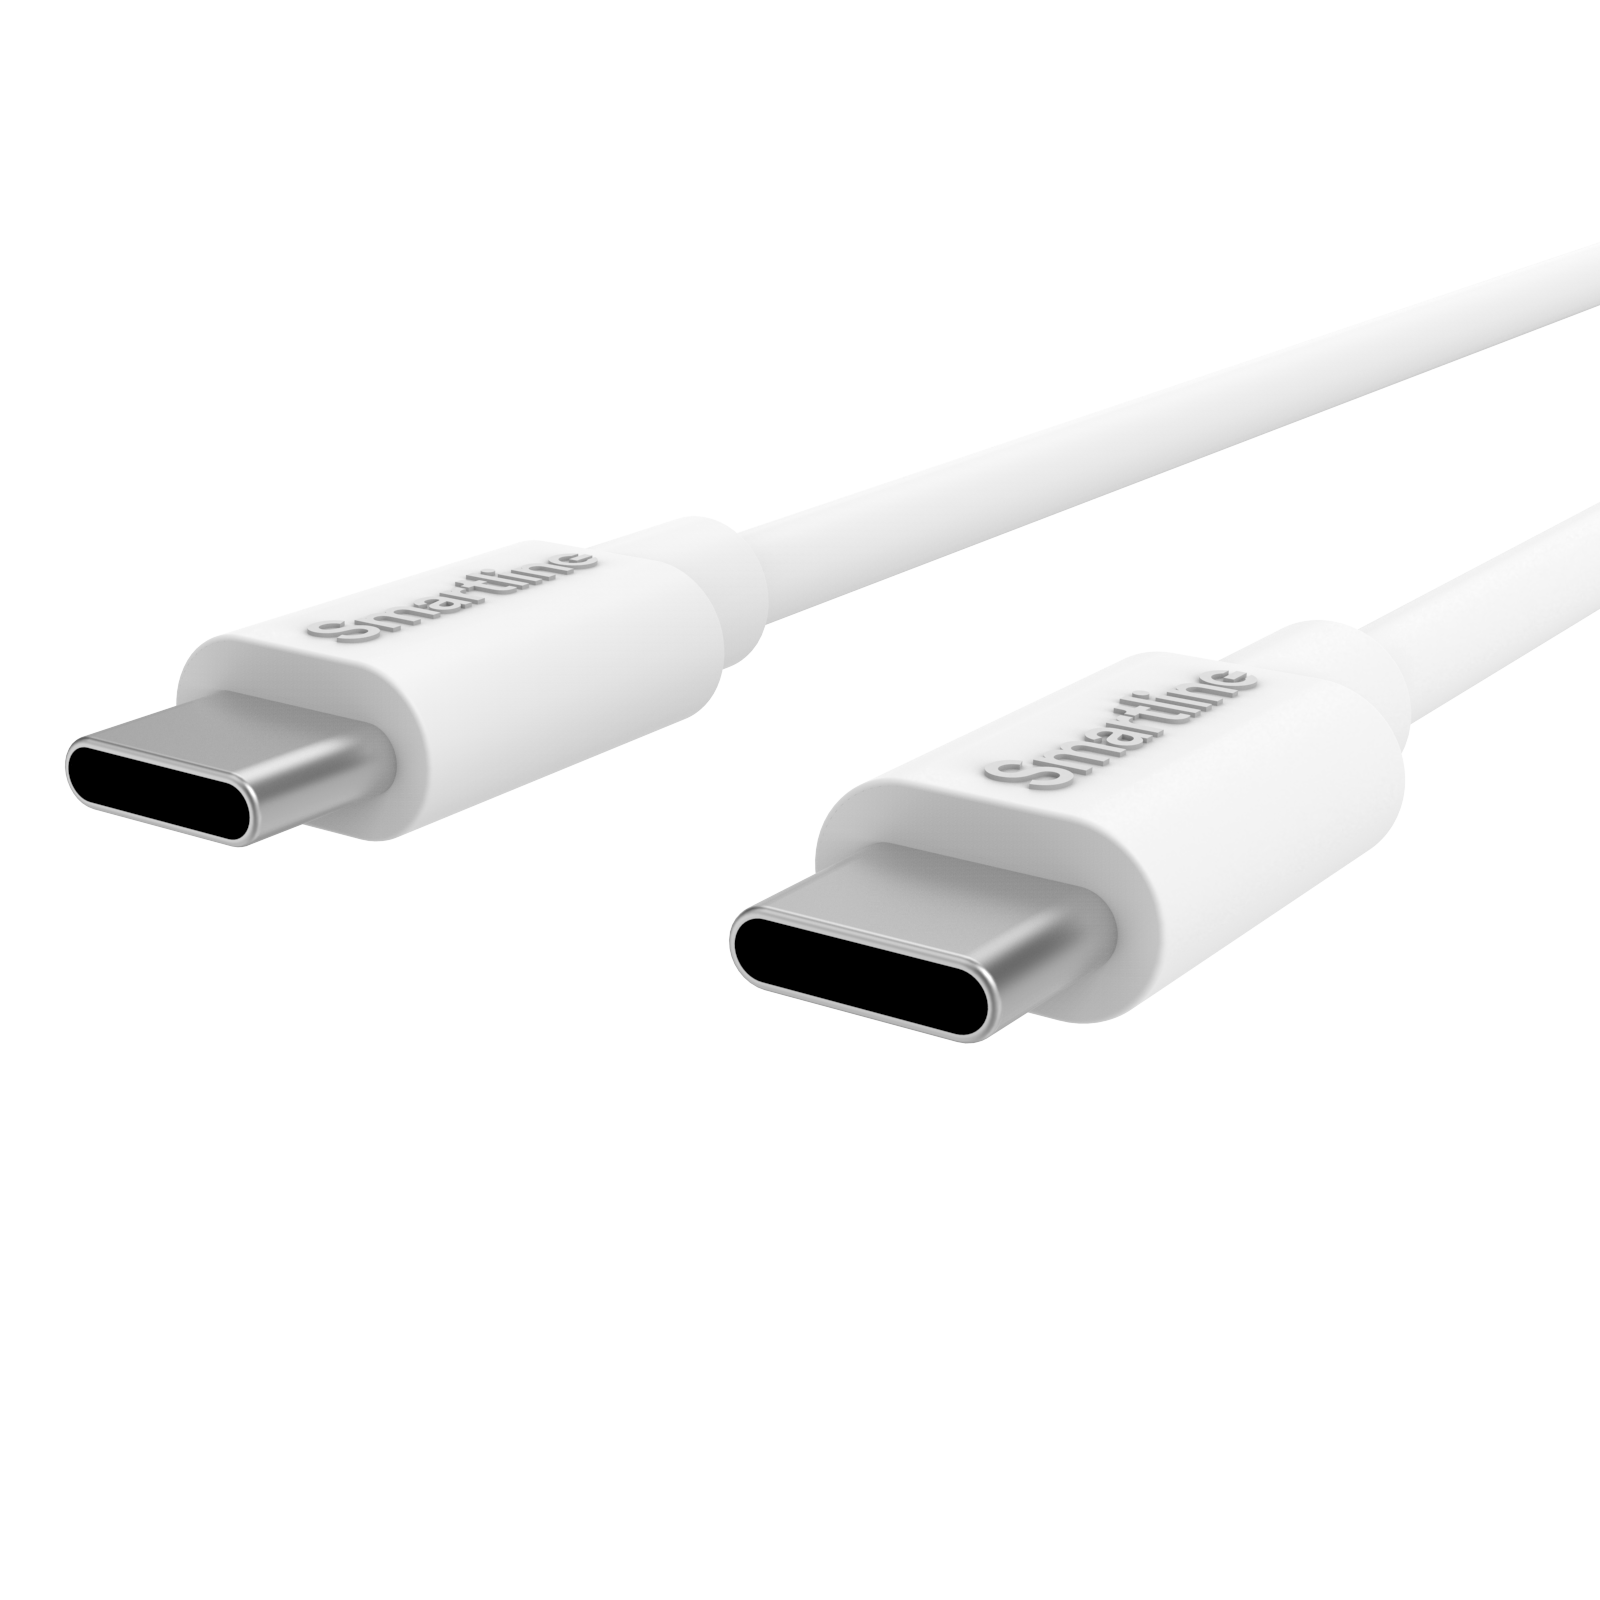 Caricatore completo per automobile  - Cavo USB-C da 1m e caricatore USB-C - Smartline